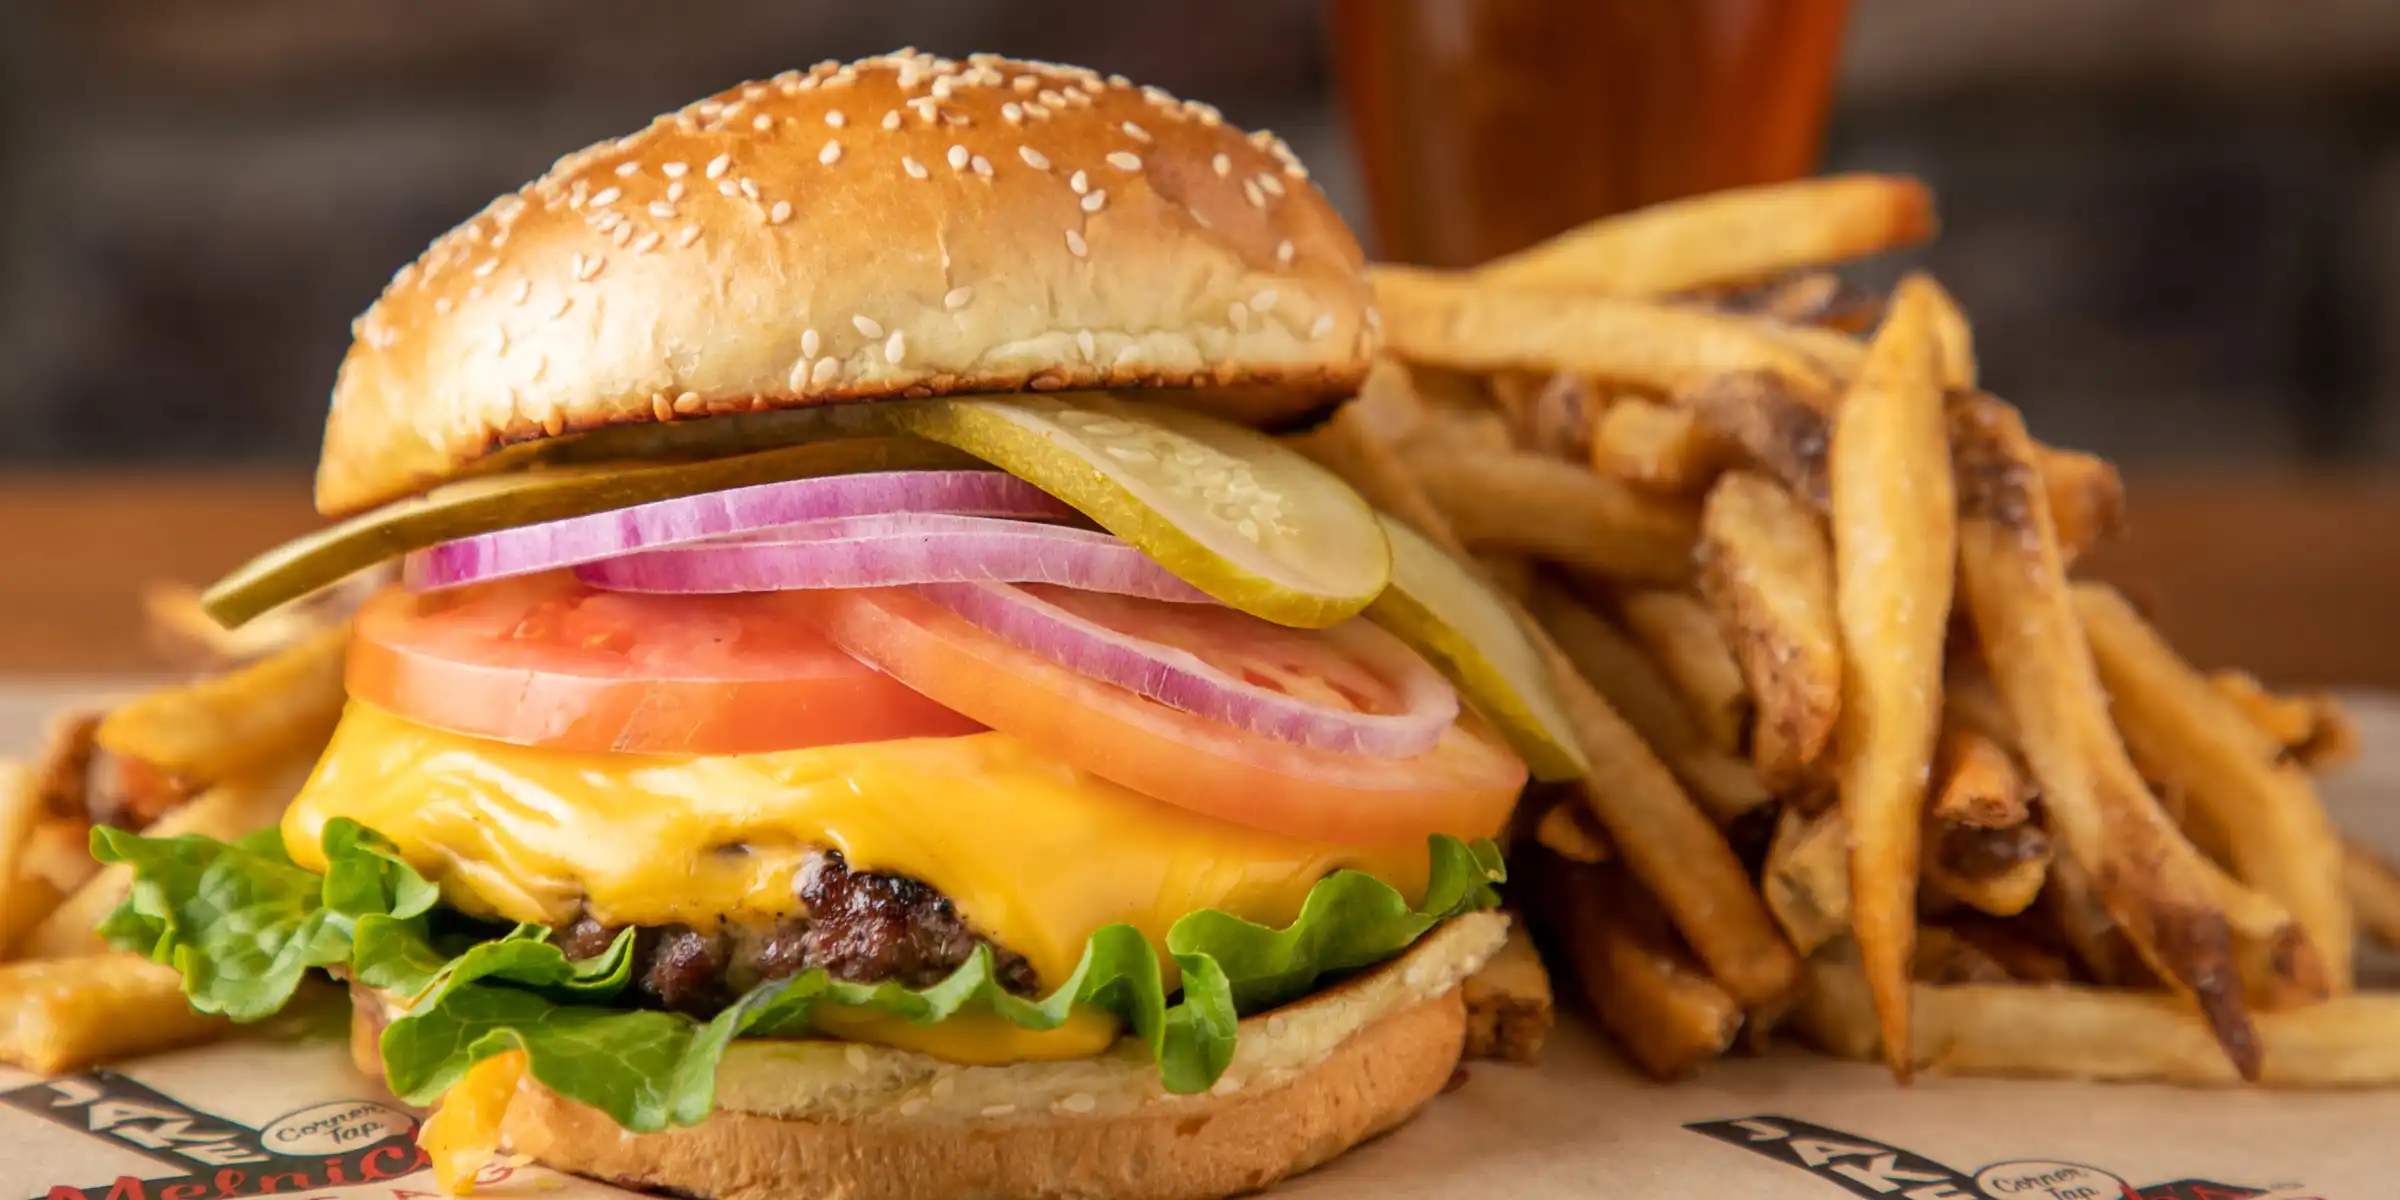 Burger at Jake Melnick's - desktop version